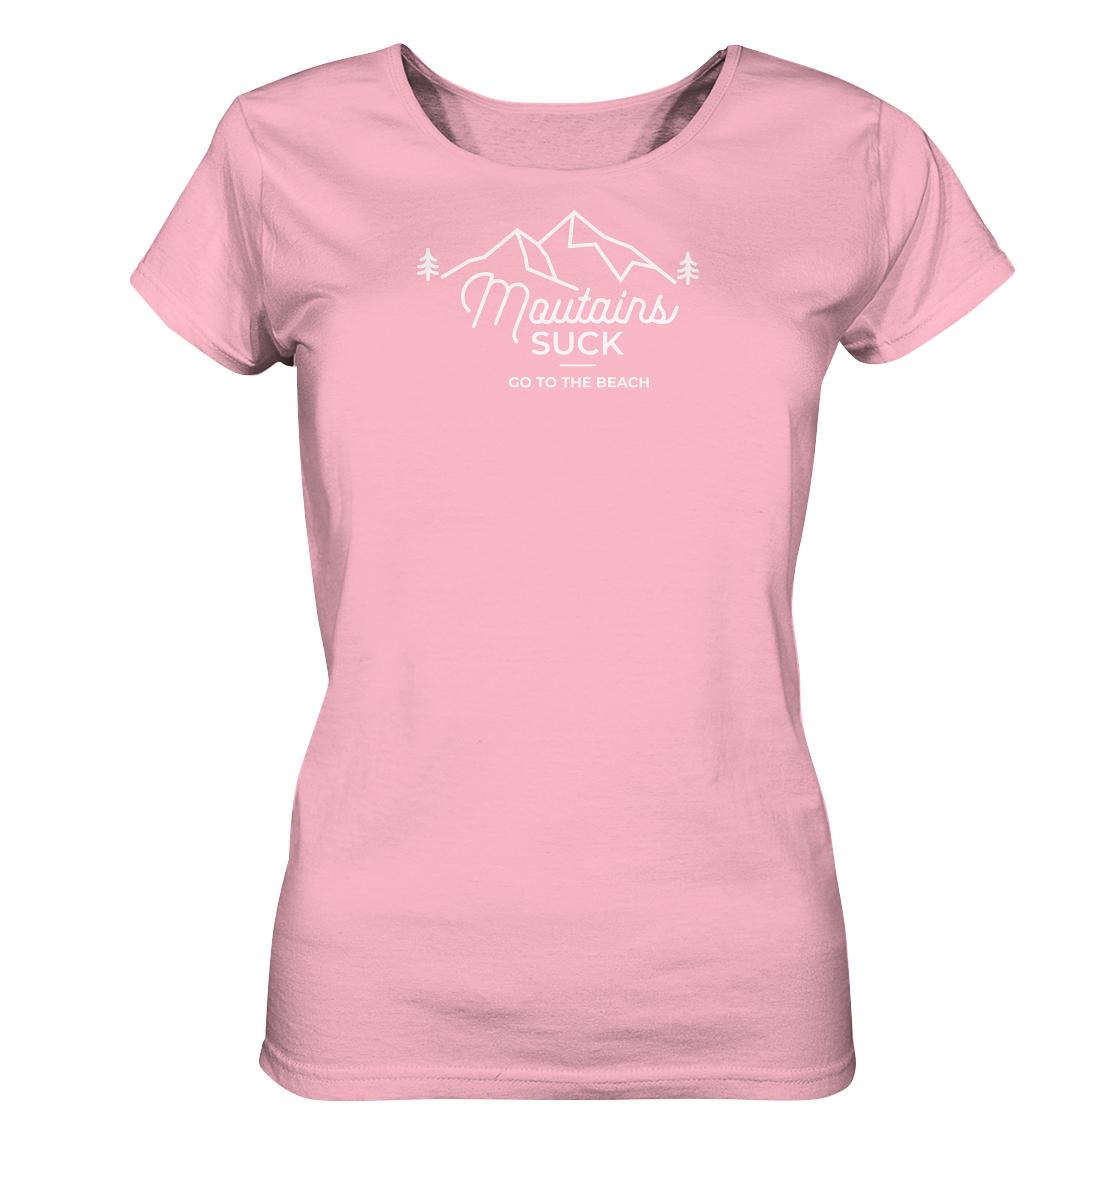 Mountains Suck - Ladies Organic Shirt